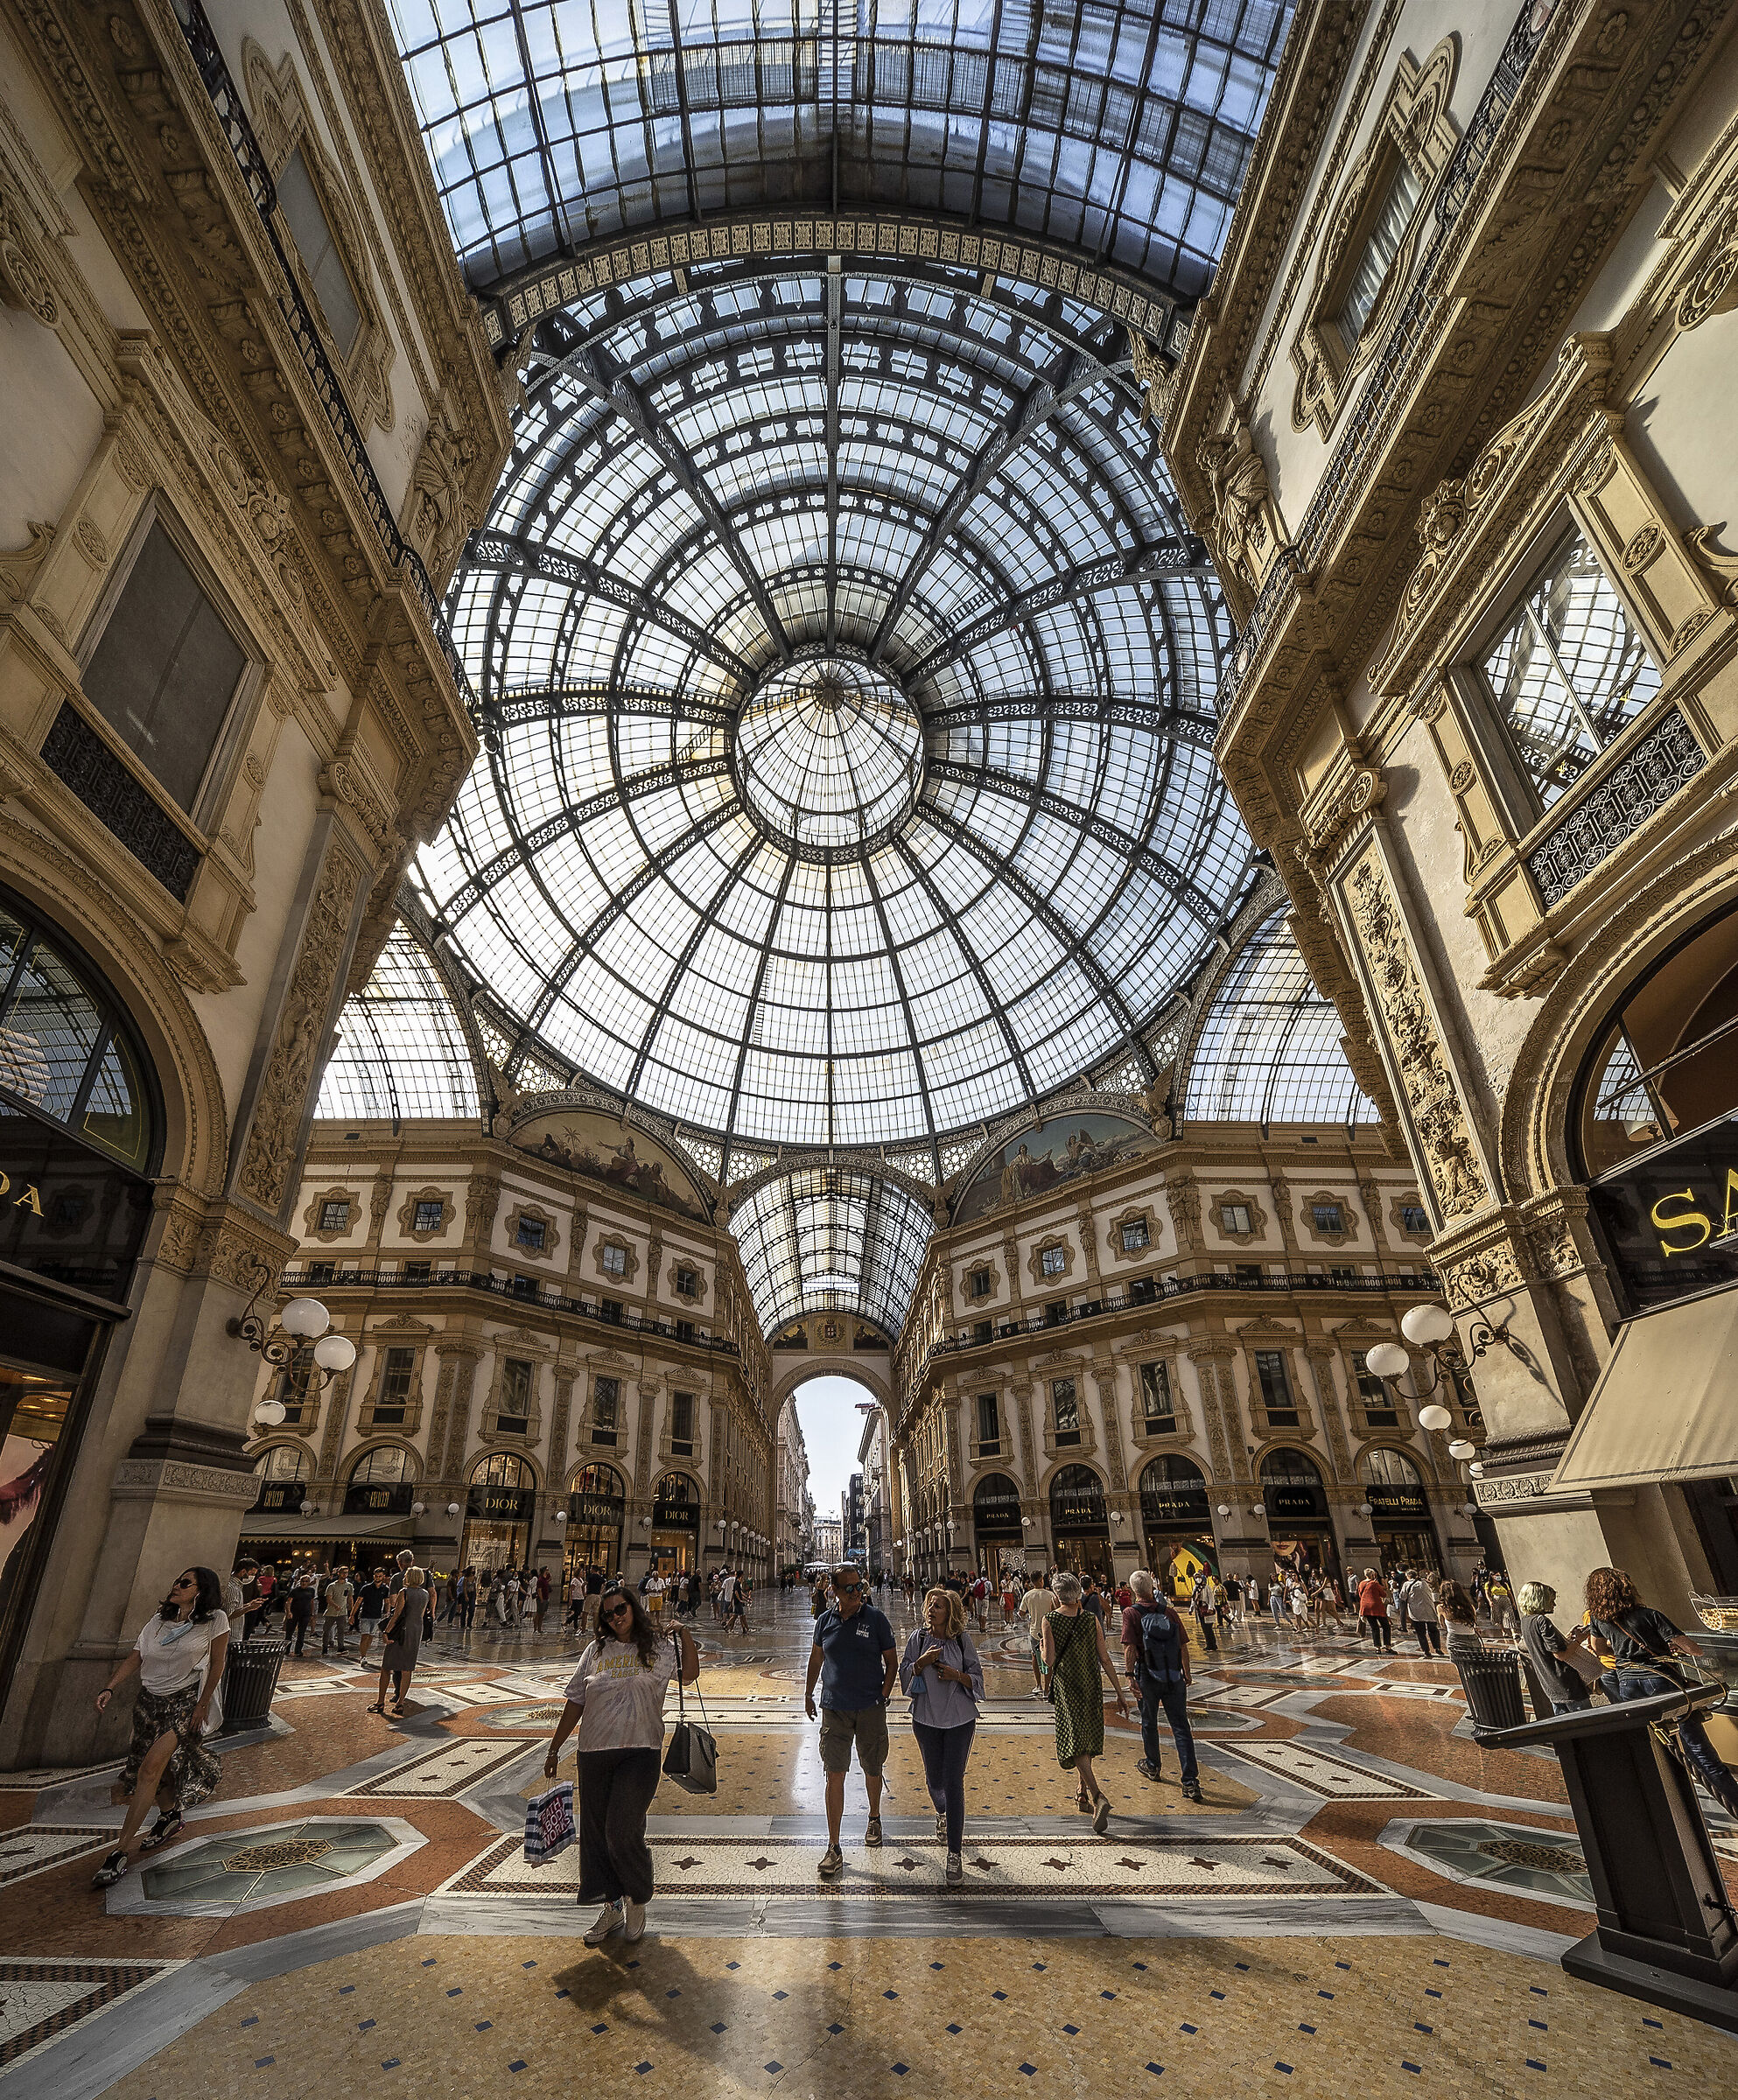 Galleria Vittorio Emanuele II - 3 September 2021, 15:32...